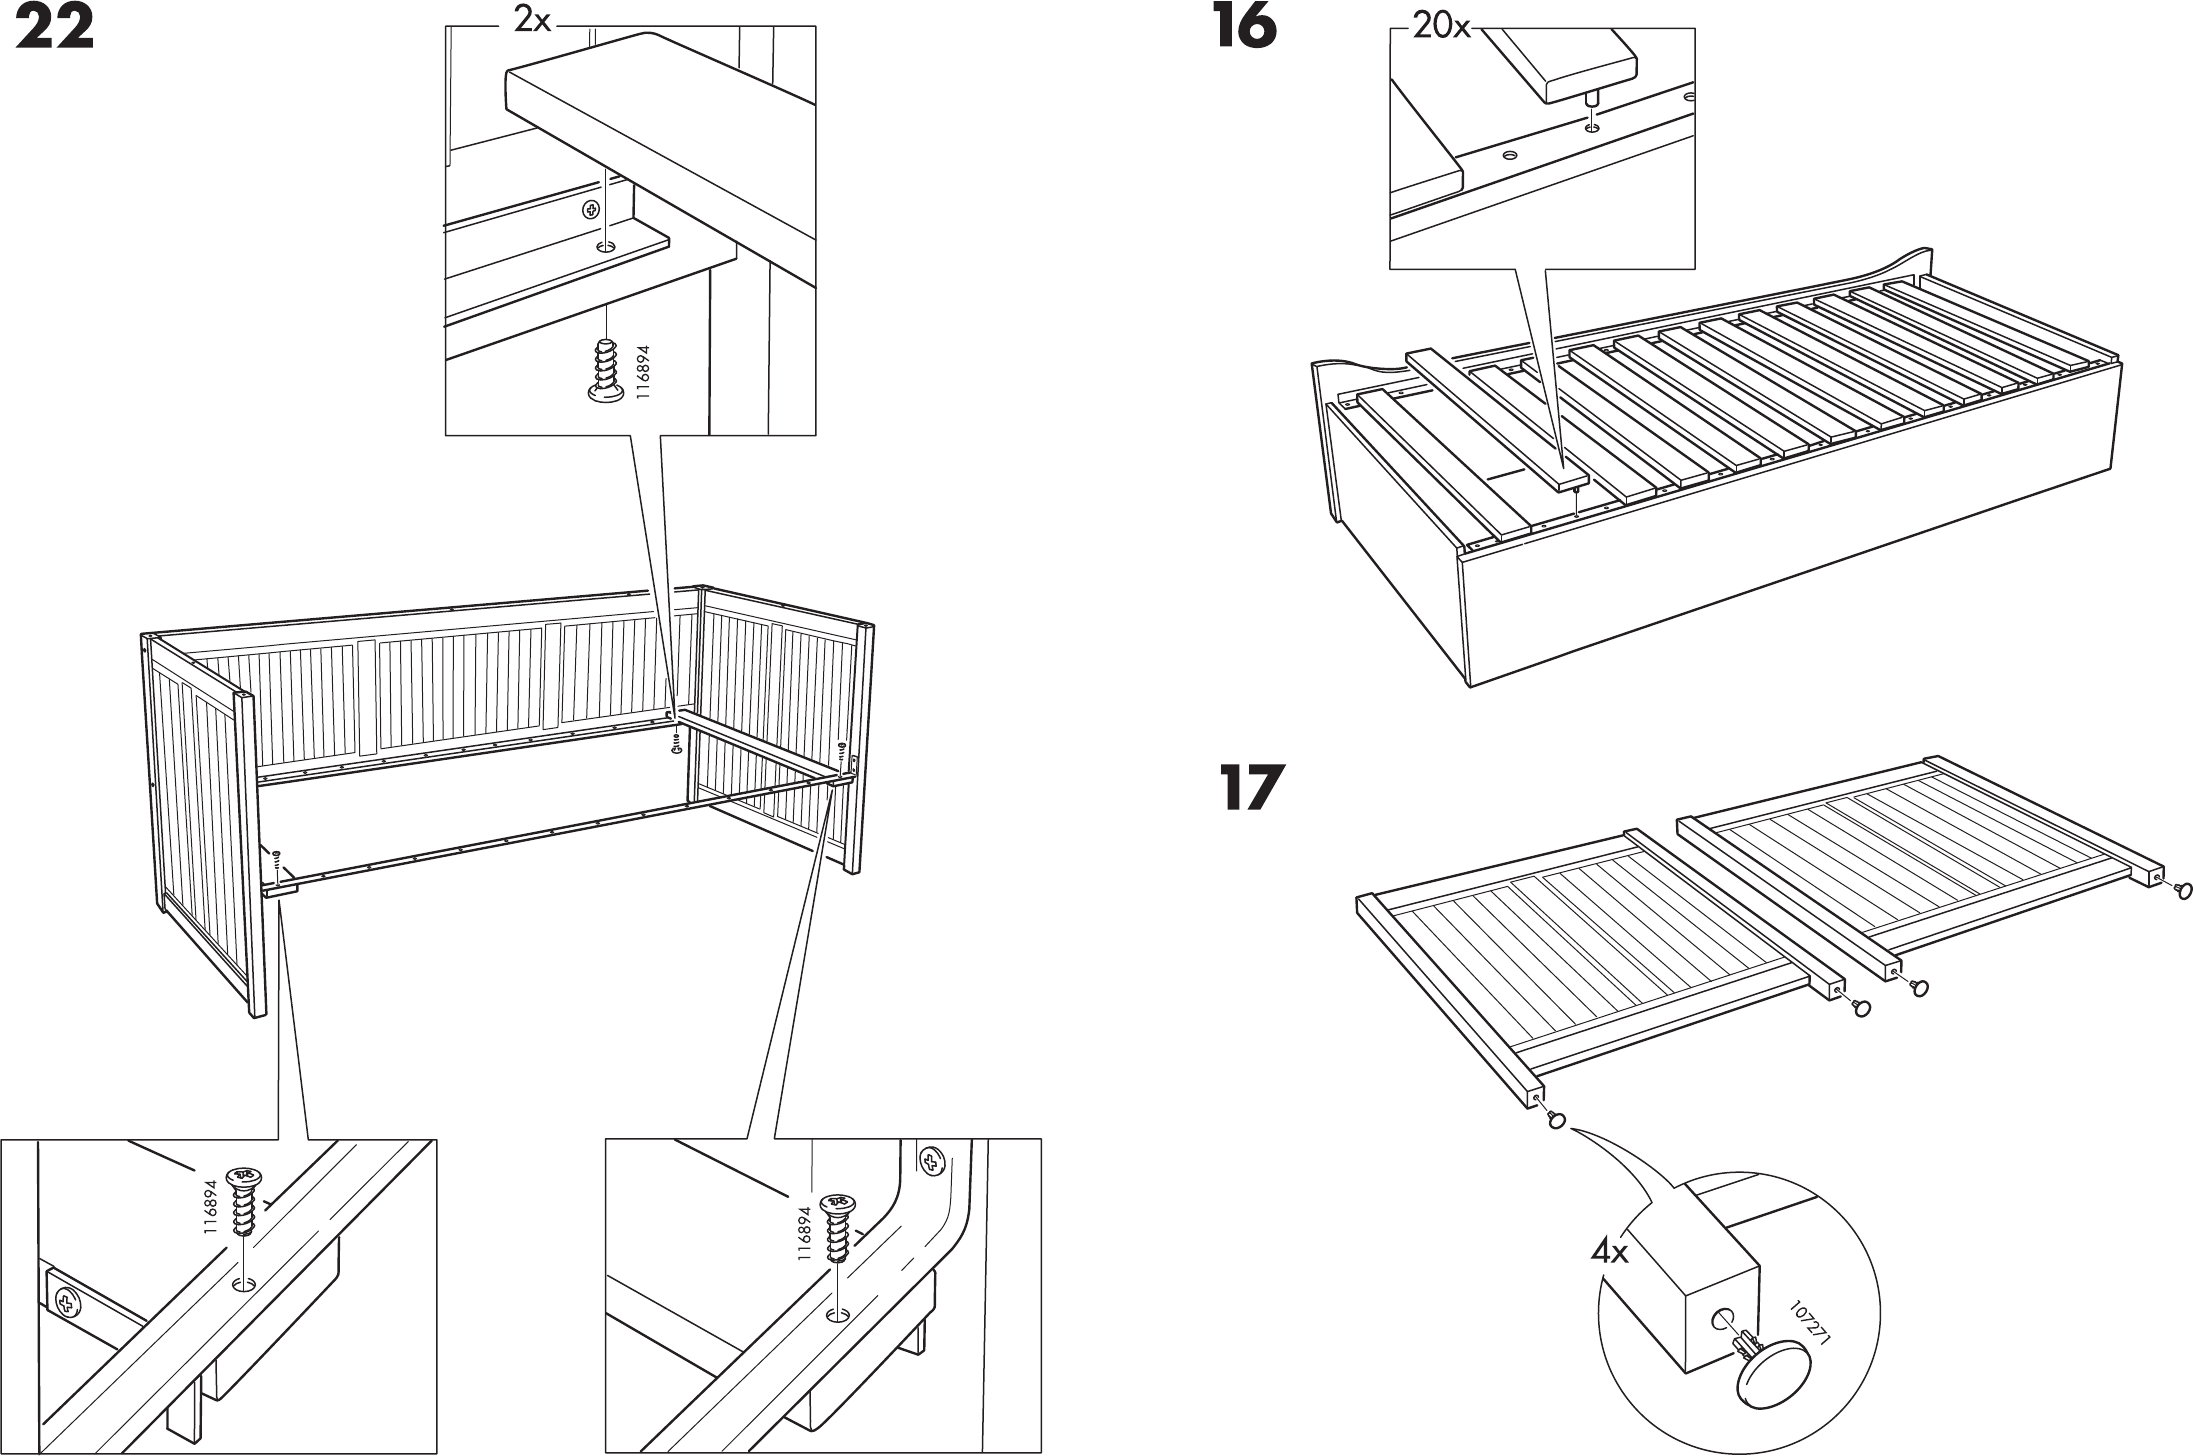 Сборка кровати икеа: инструкции и схемы, как собрать детскую двухъярусную кровать-чердак, модель мальм с пологом, а также раздвижные бримнэс, хемнэс и иные